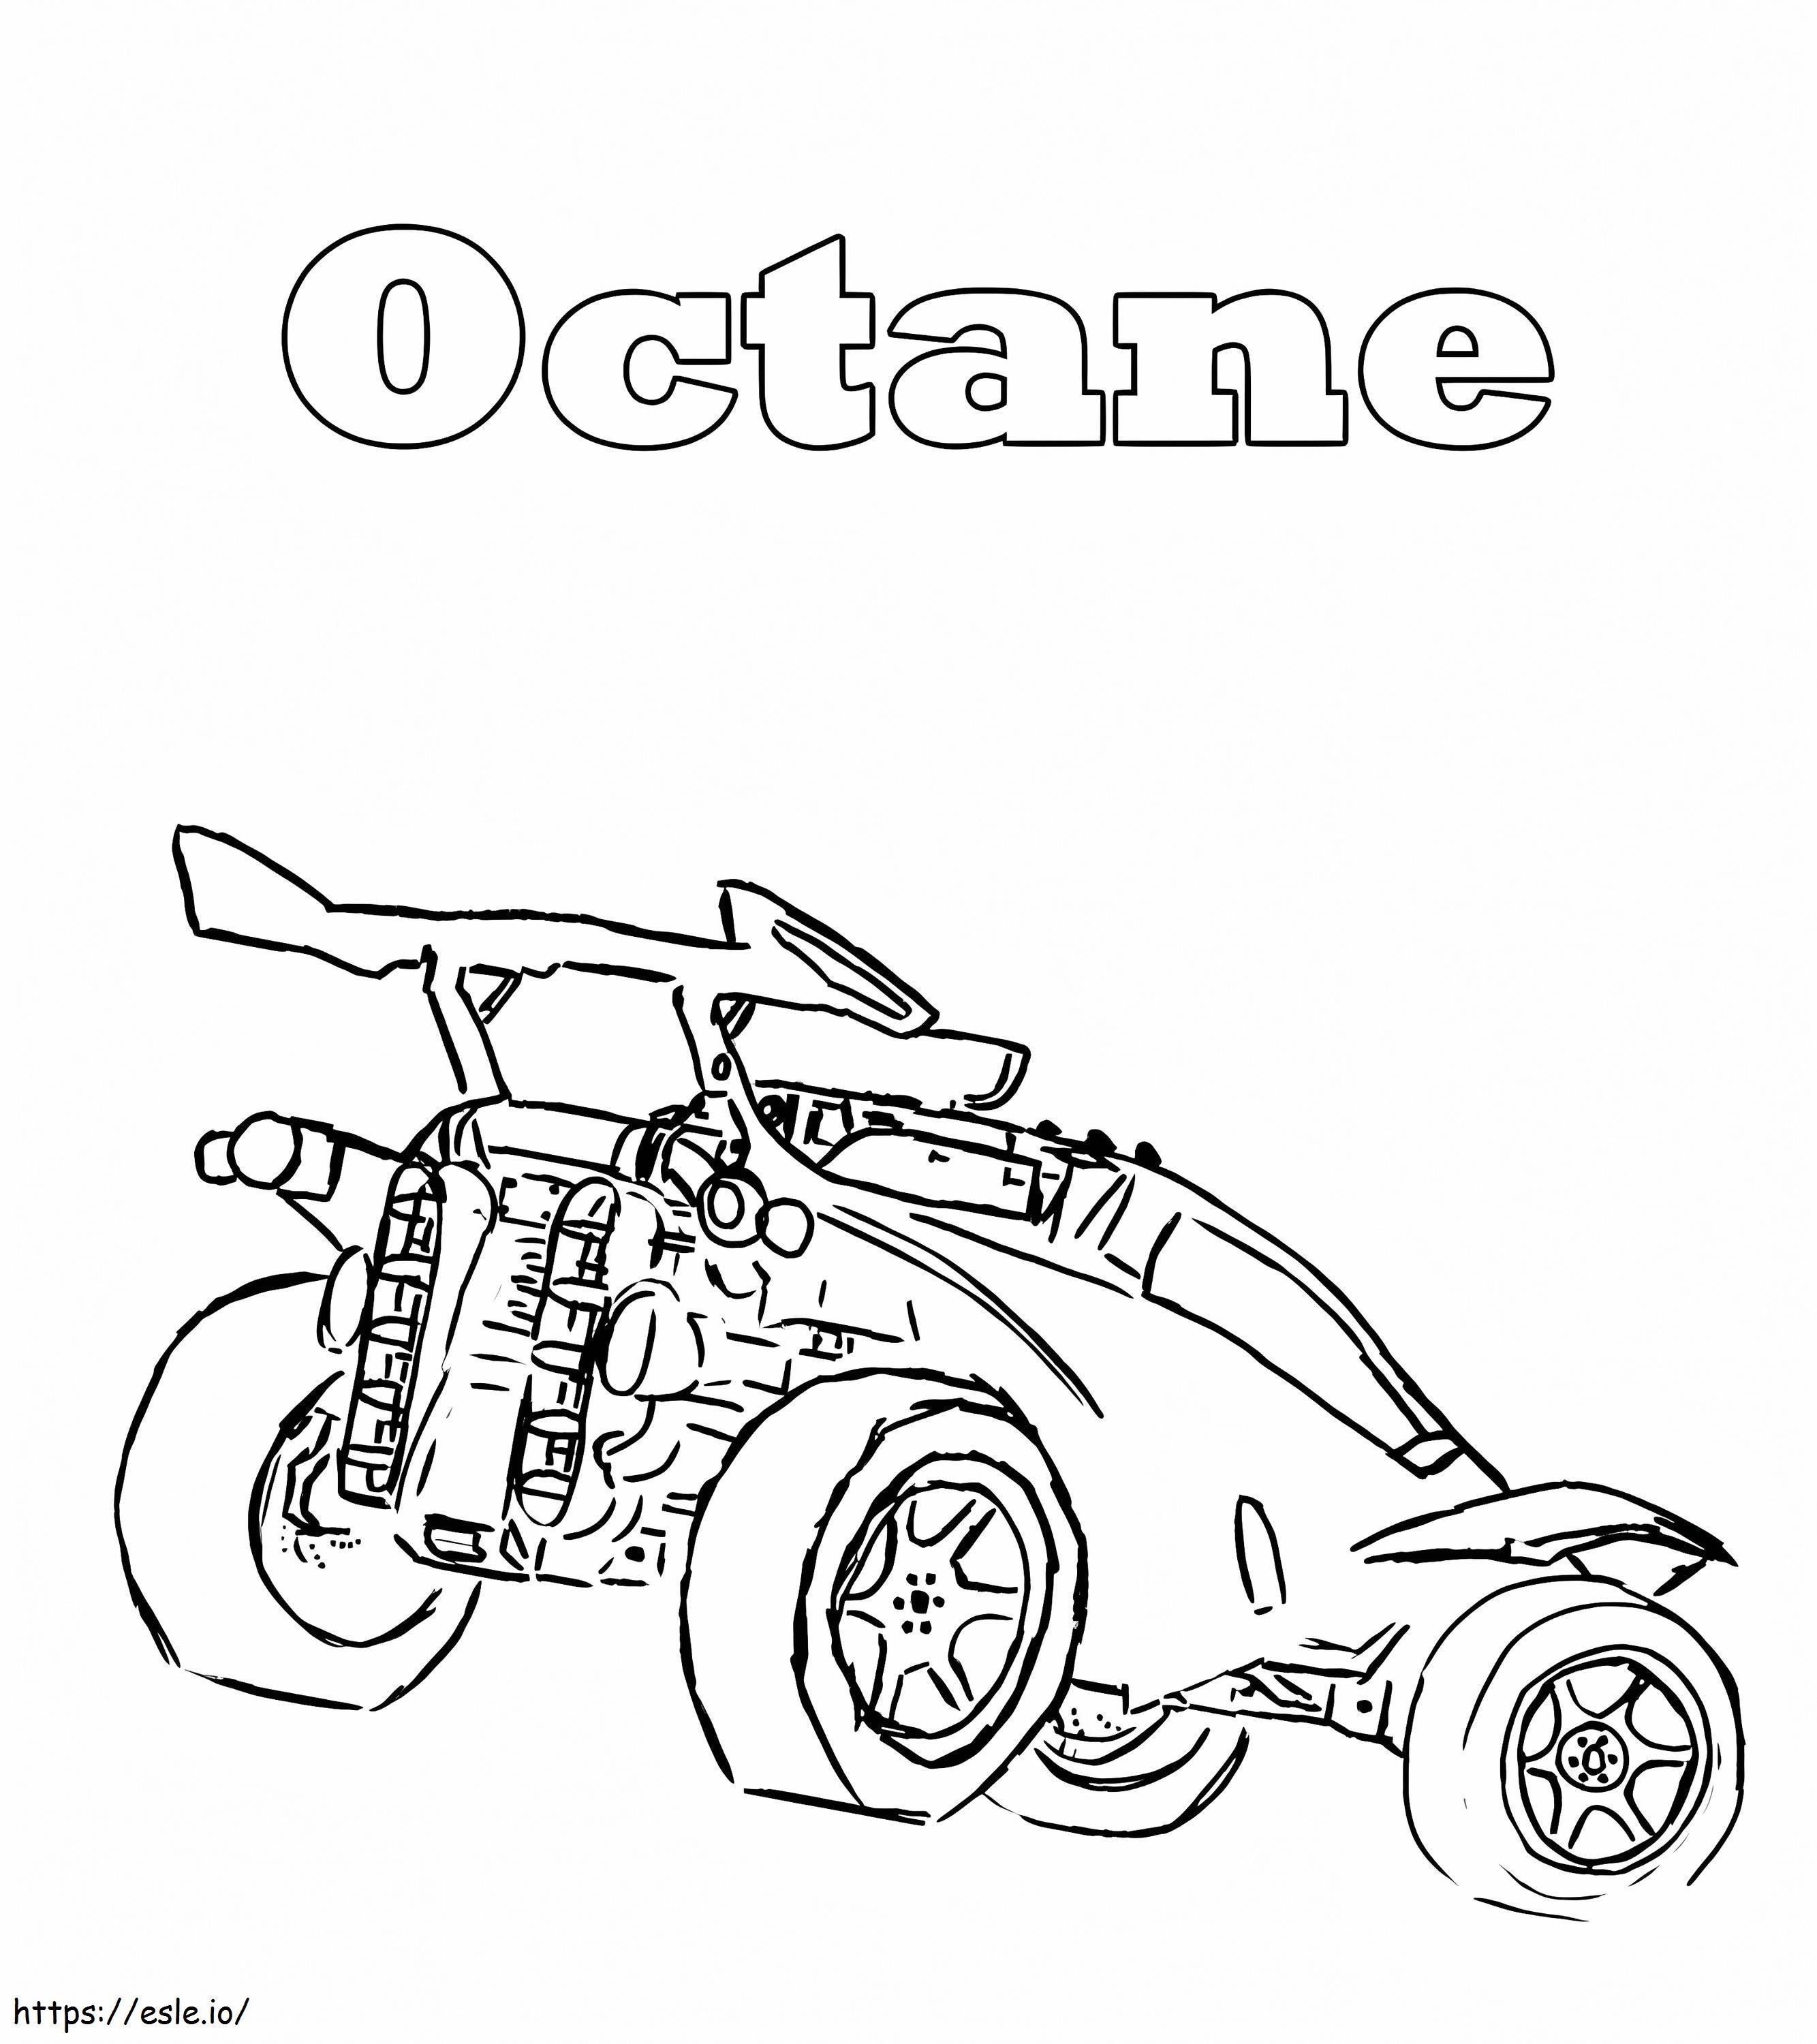 Octane Rocket League coloring page